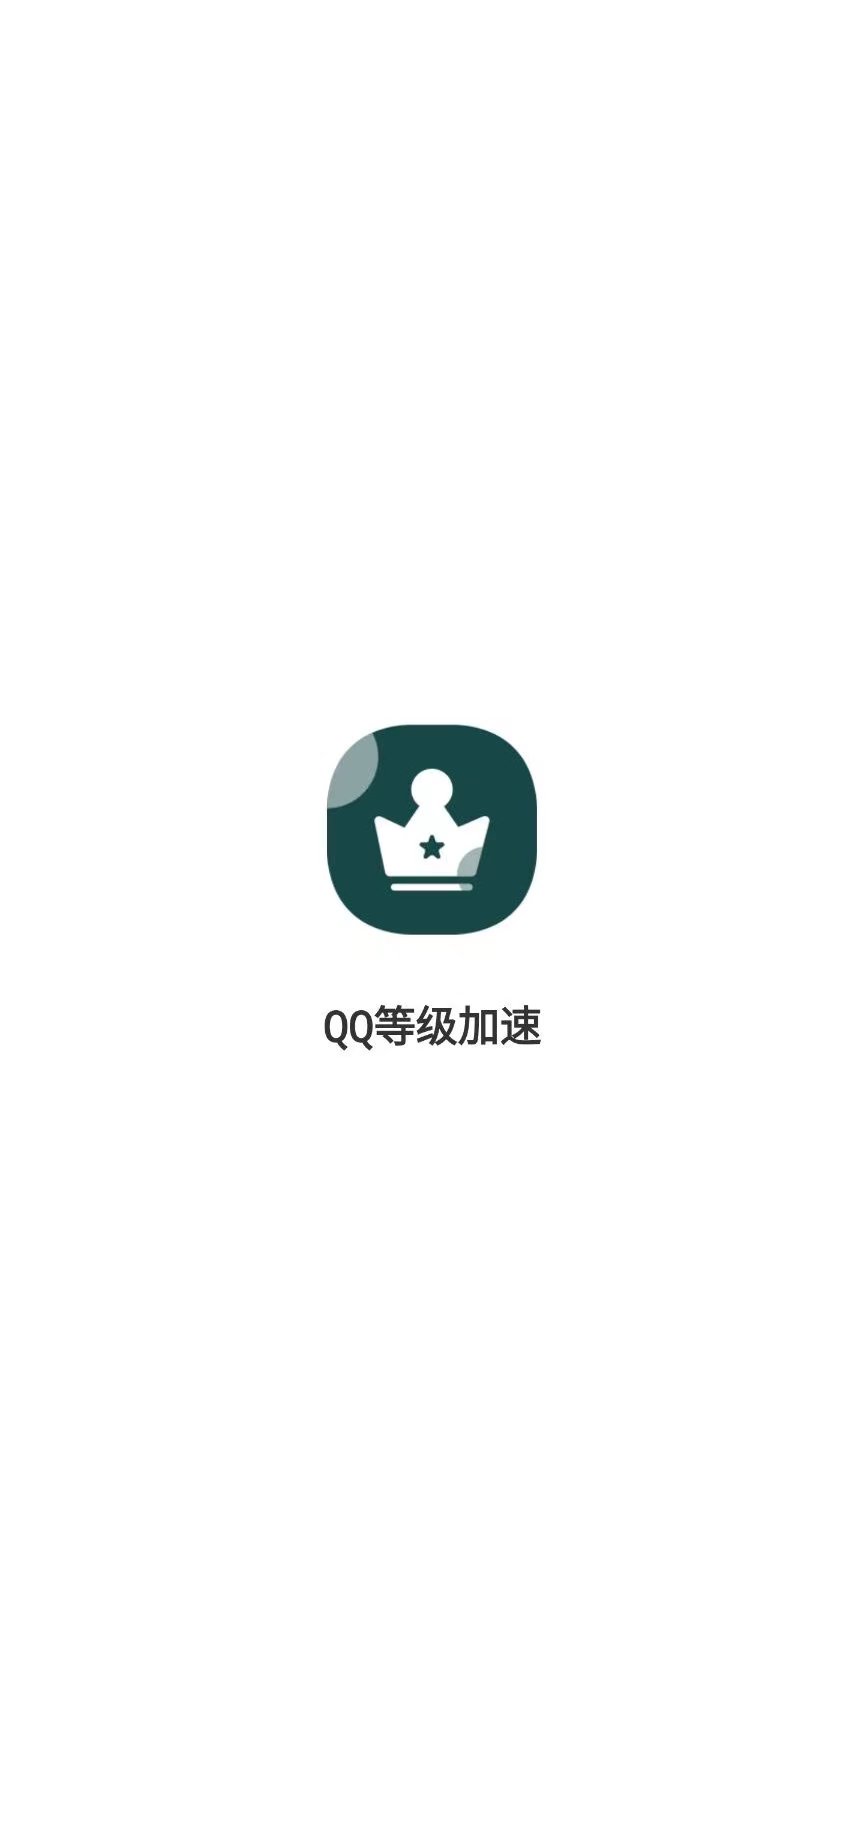 QQ等级加速软件 任务一键完成，无需密码-第1张图